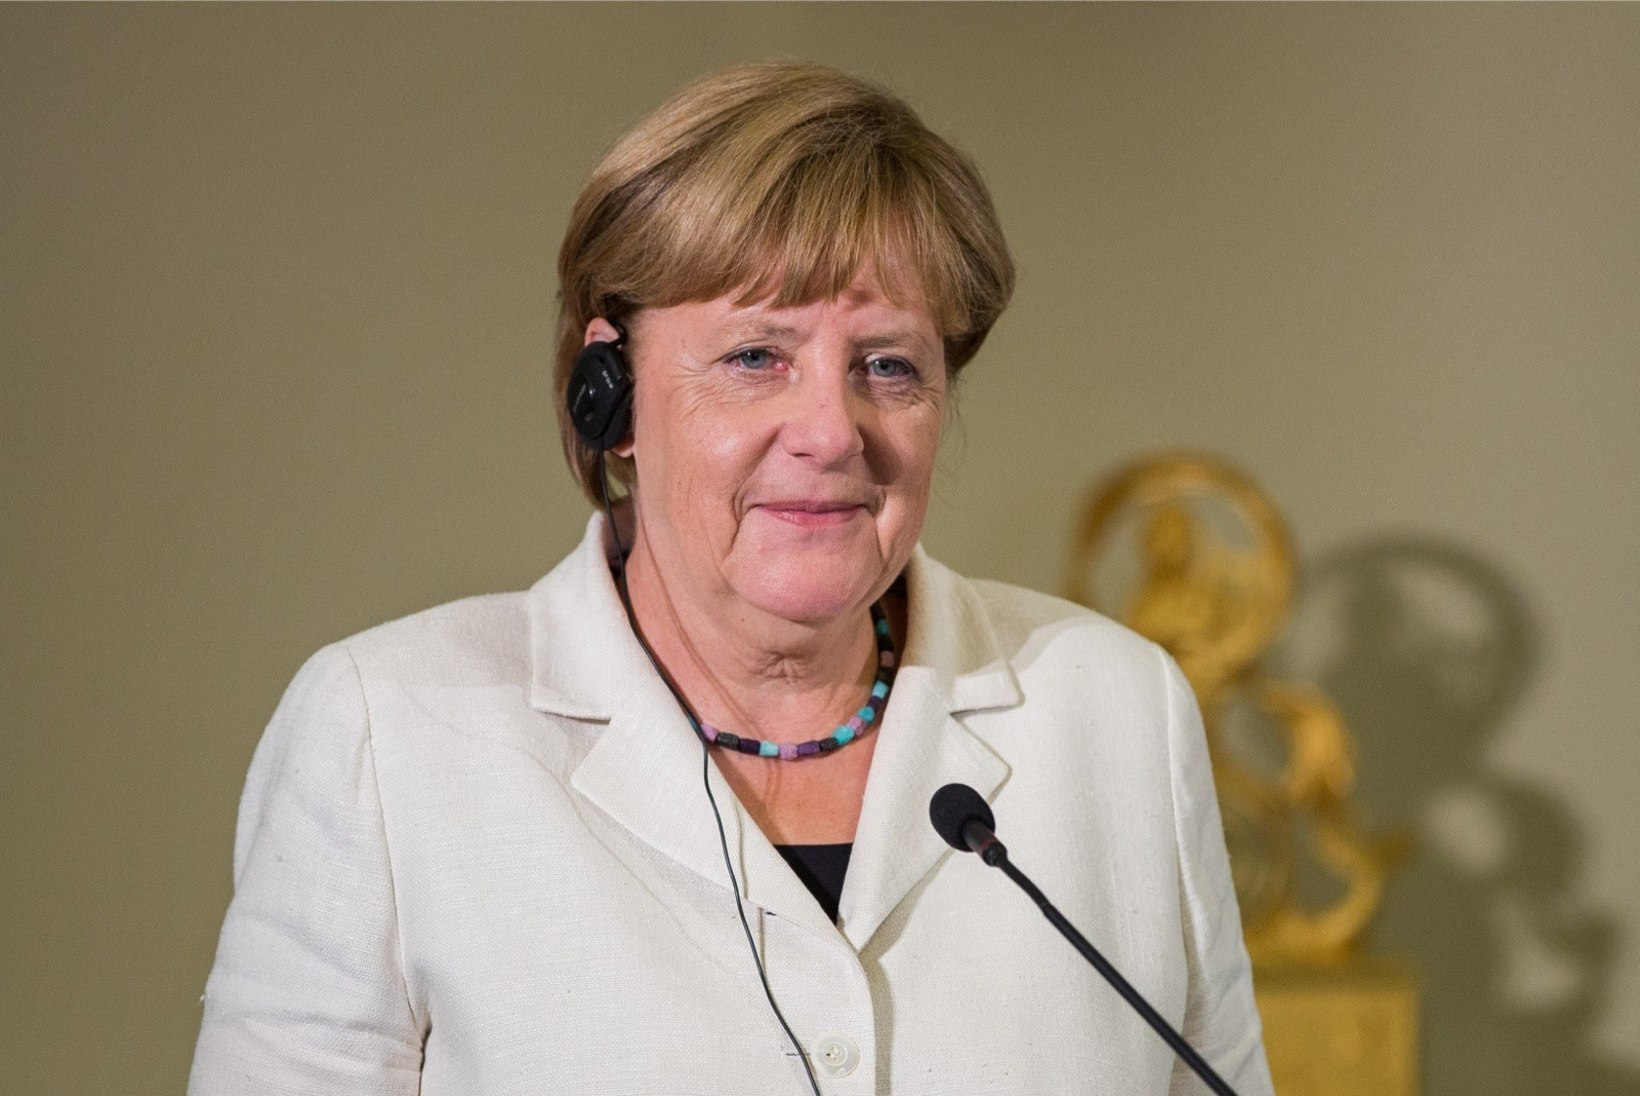 FOTOD | Angela Merkel jõudis Toompeale